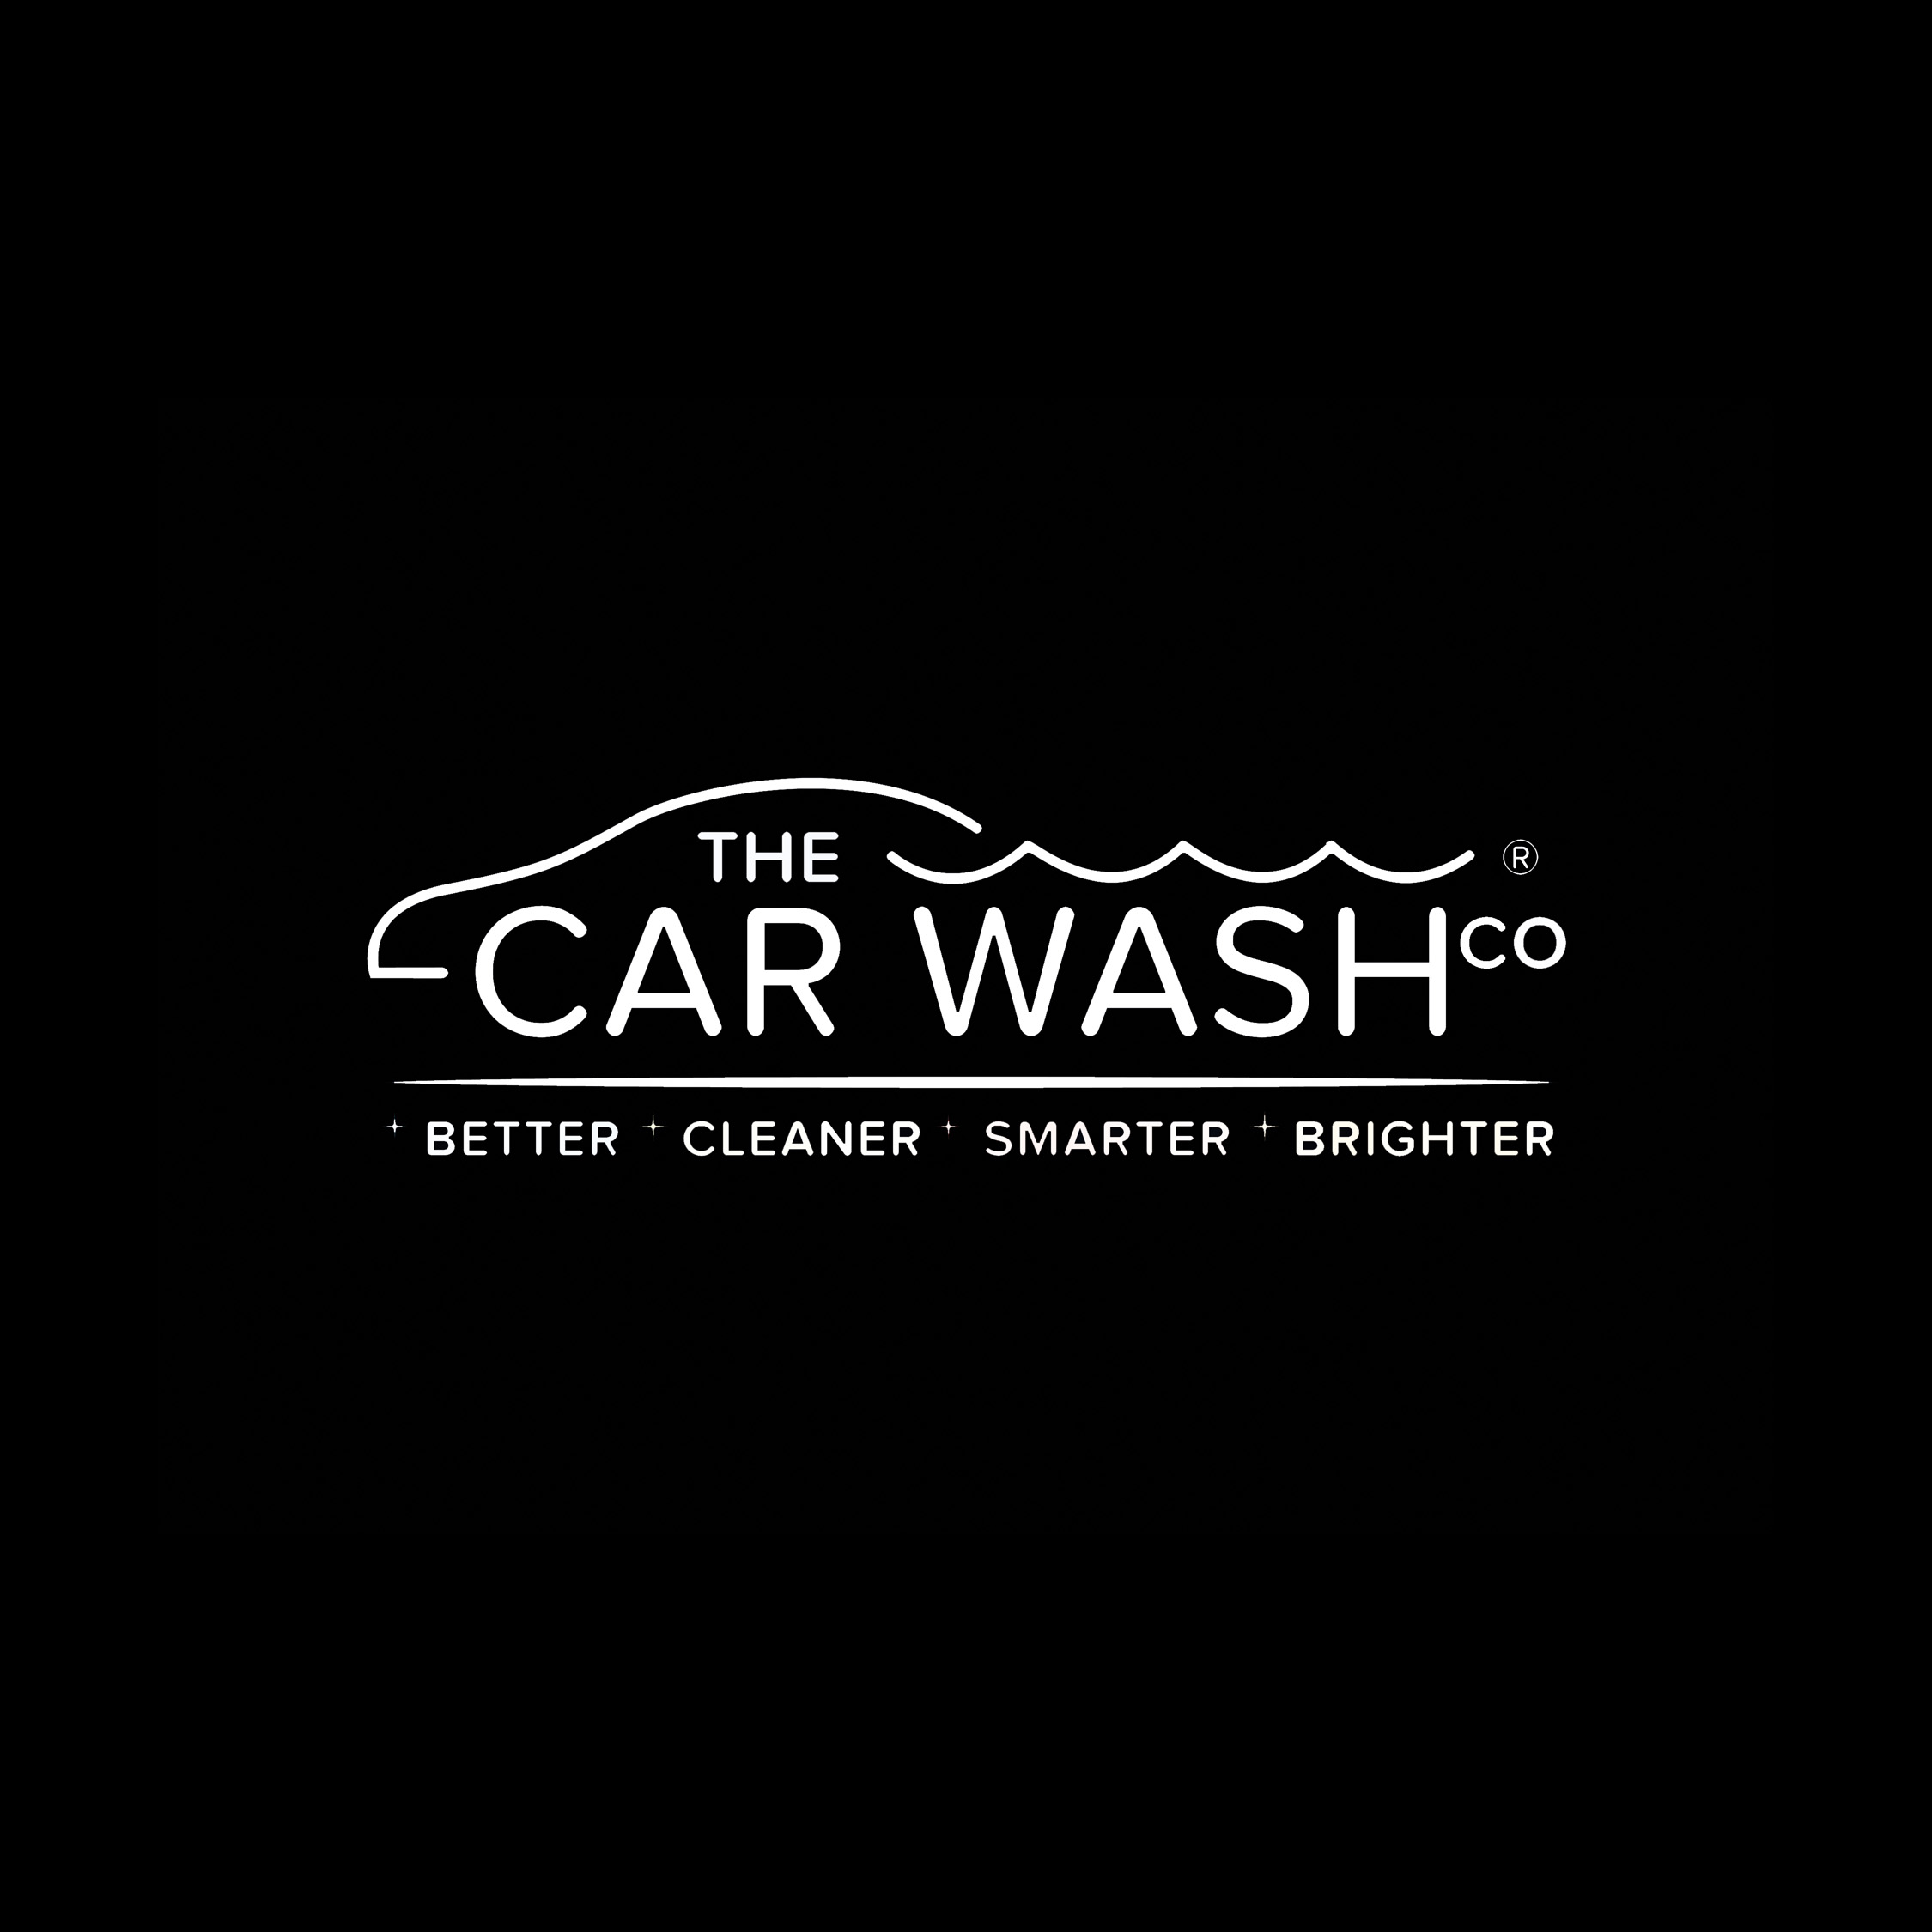 Car Wash Company